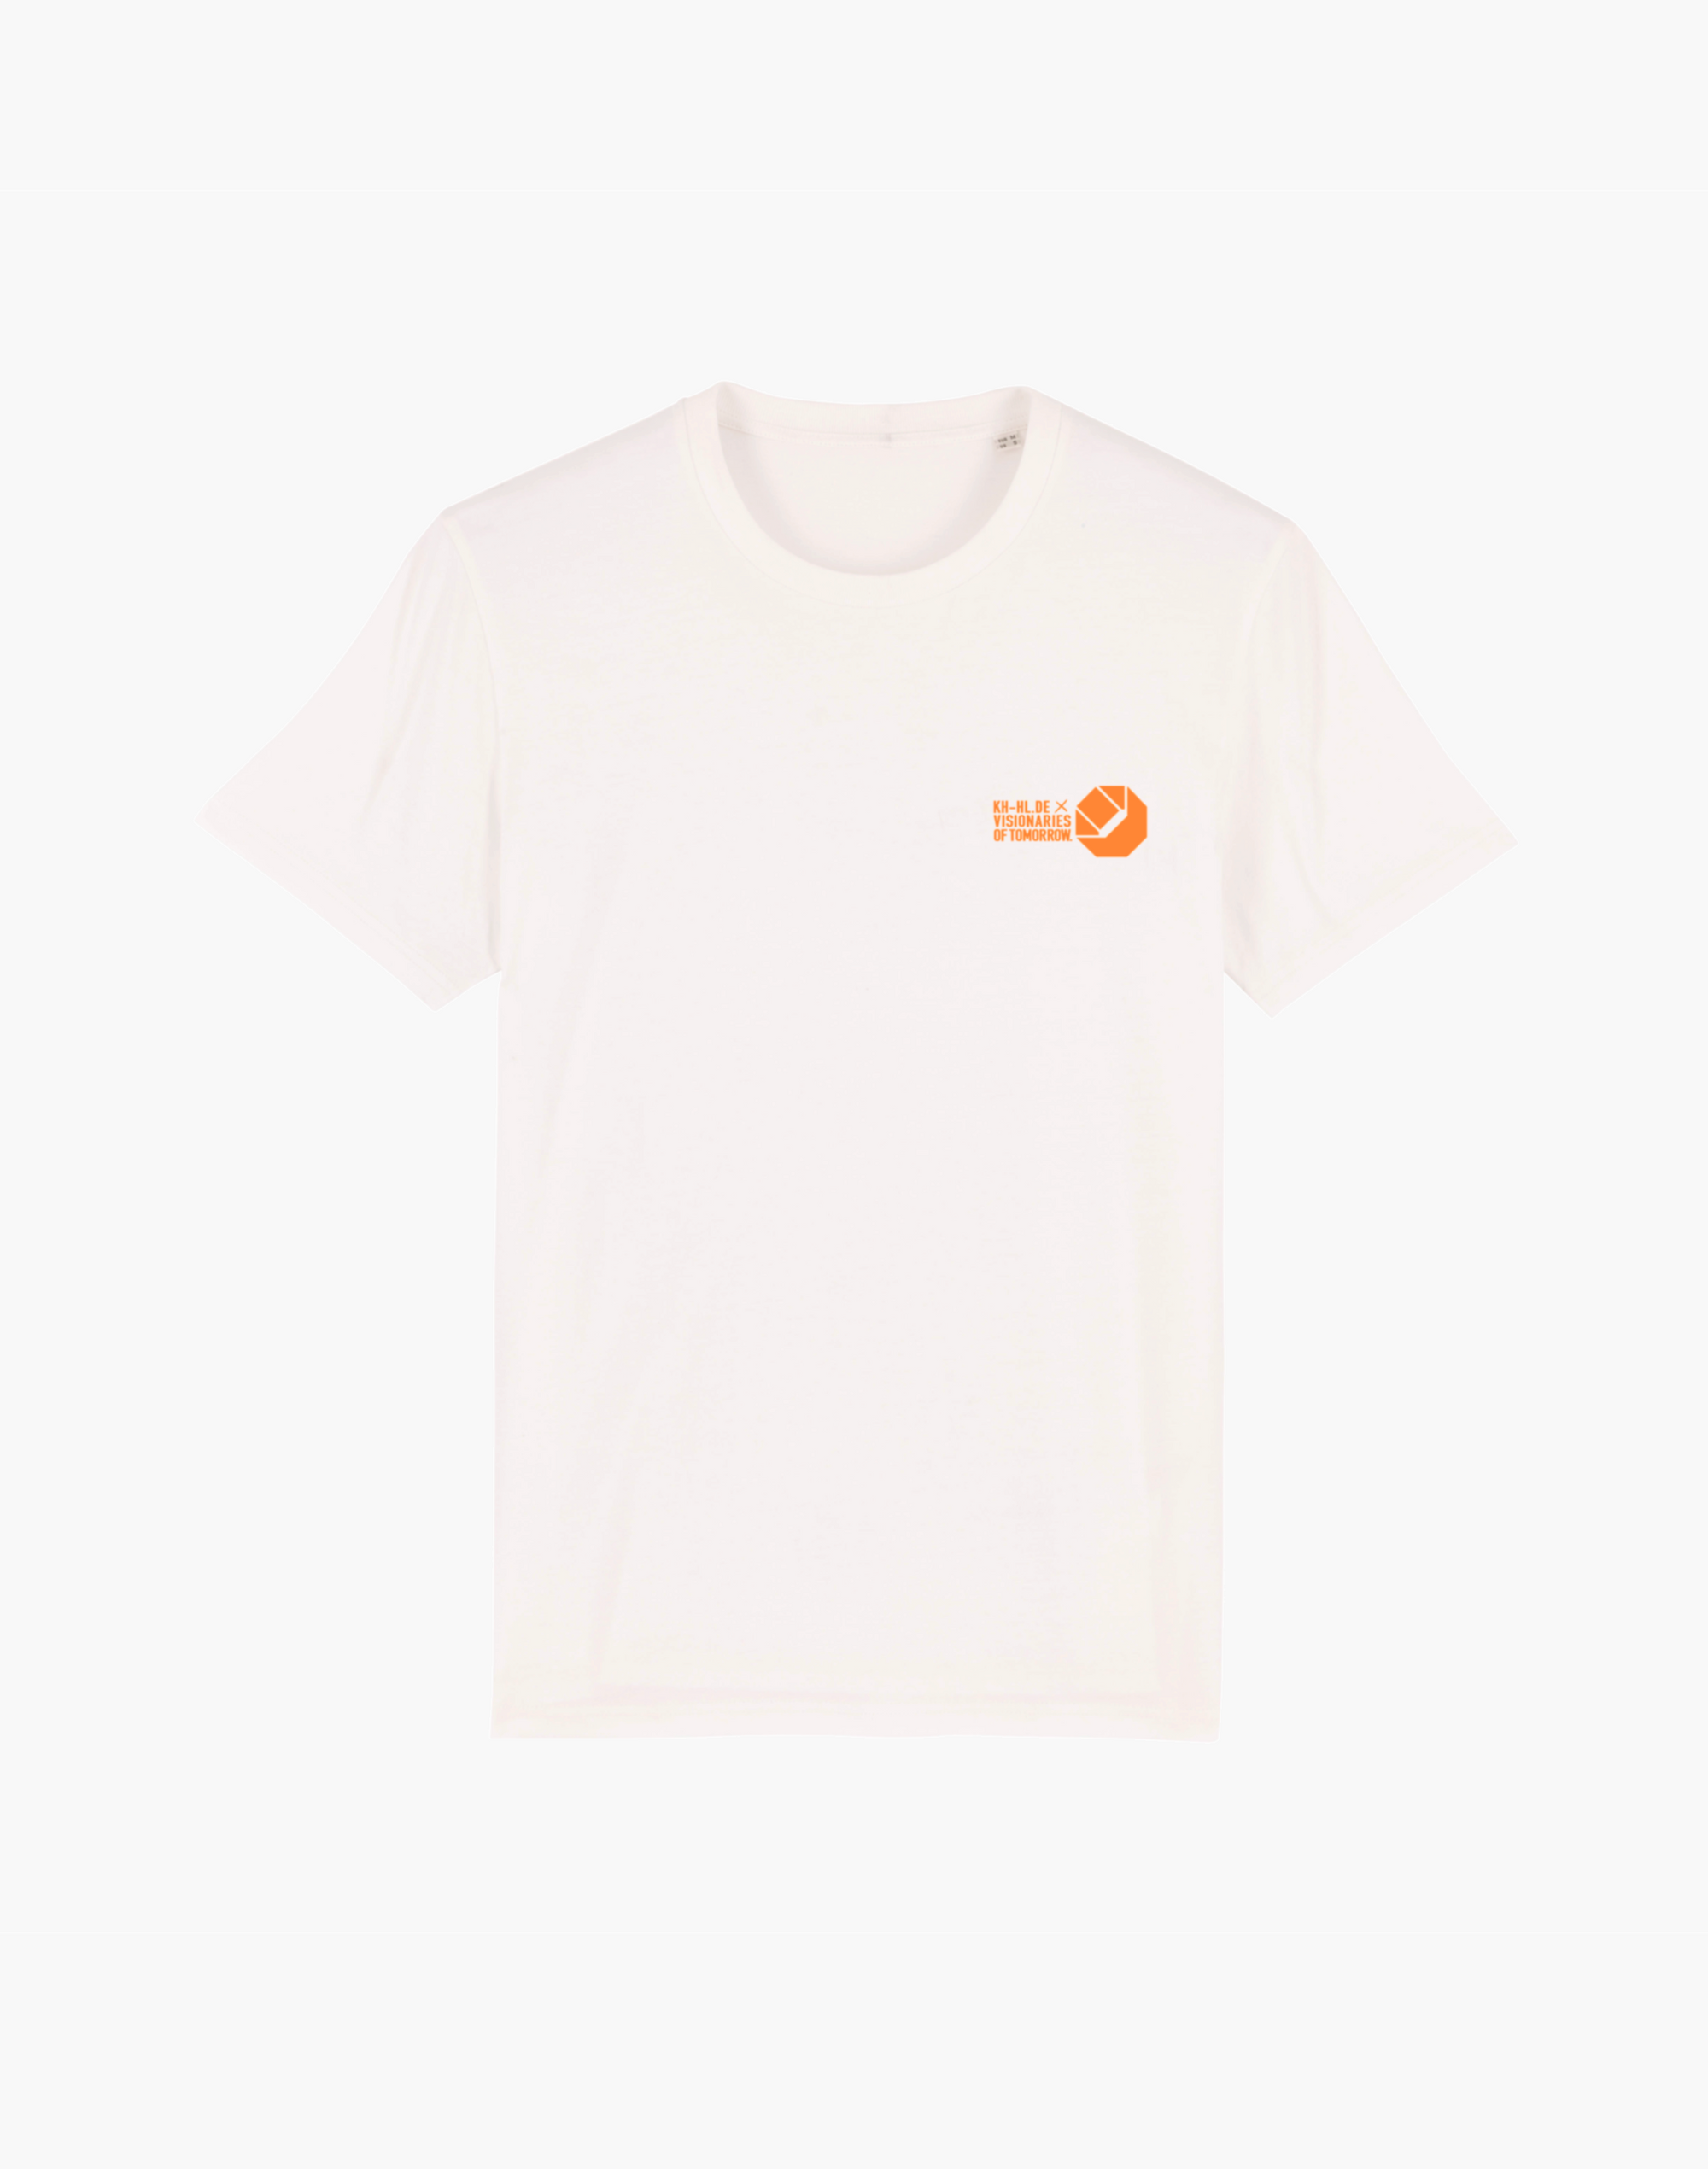 KH-HL x VOT unisex T-shirt „Das Handwerk“